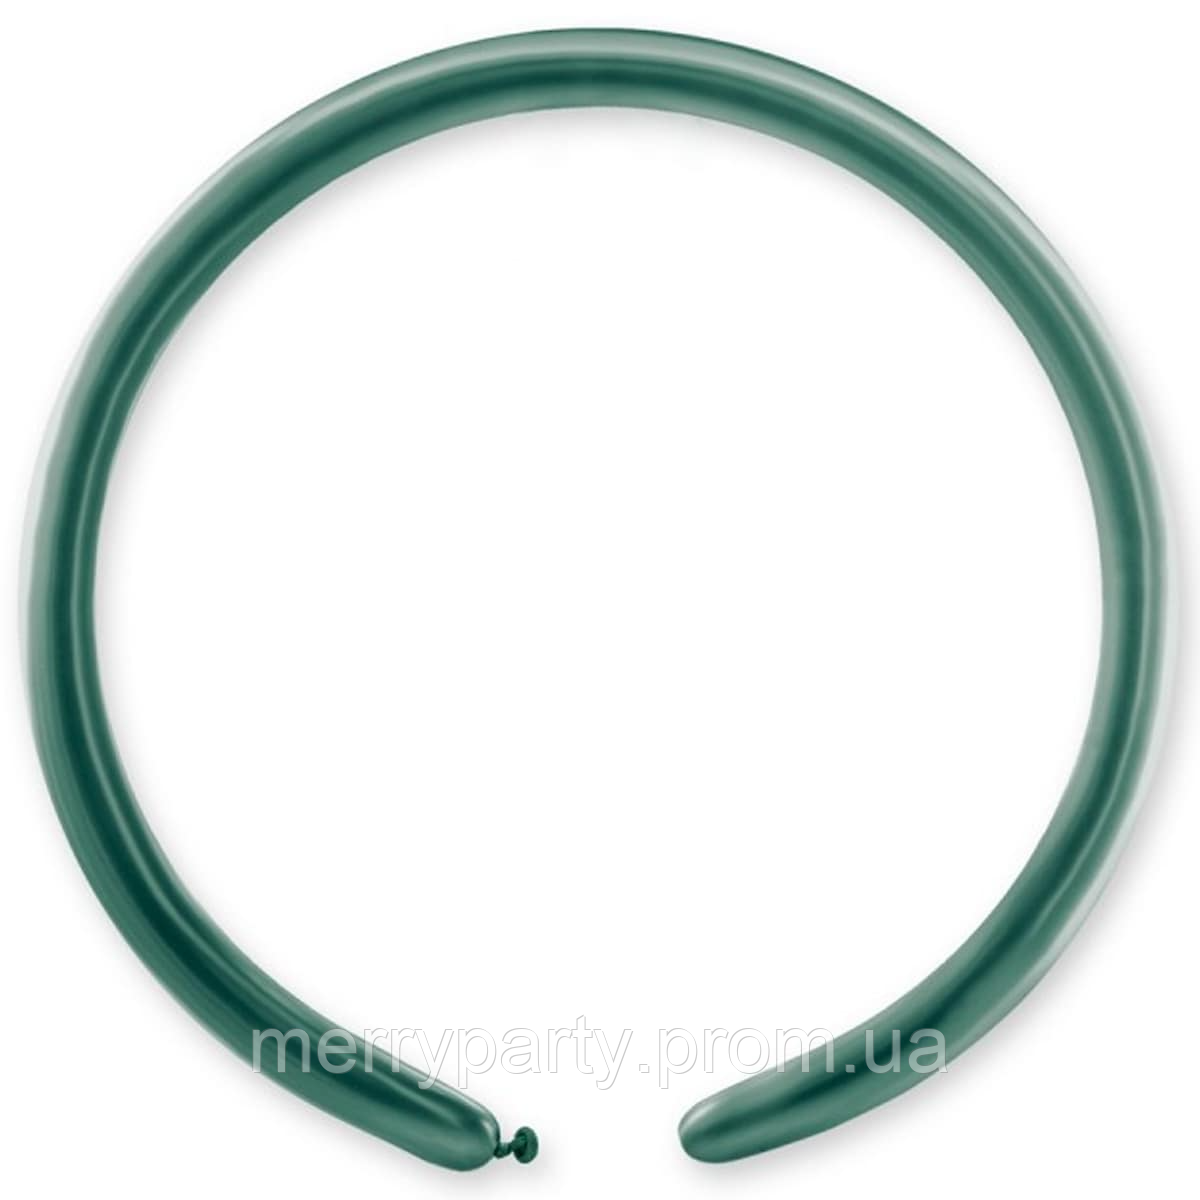 ШДМ 160 хром зеленый Gemar Италия шар для моделирования